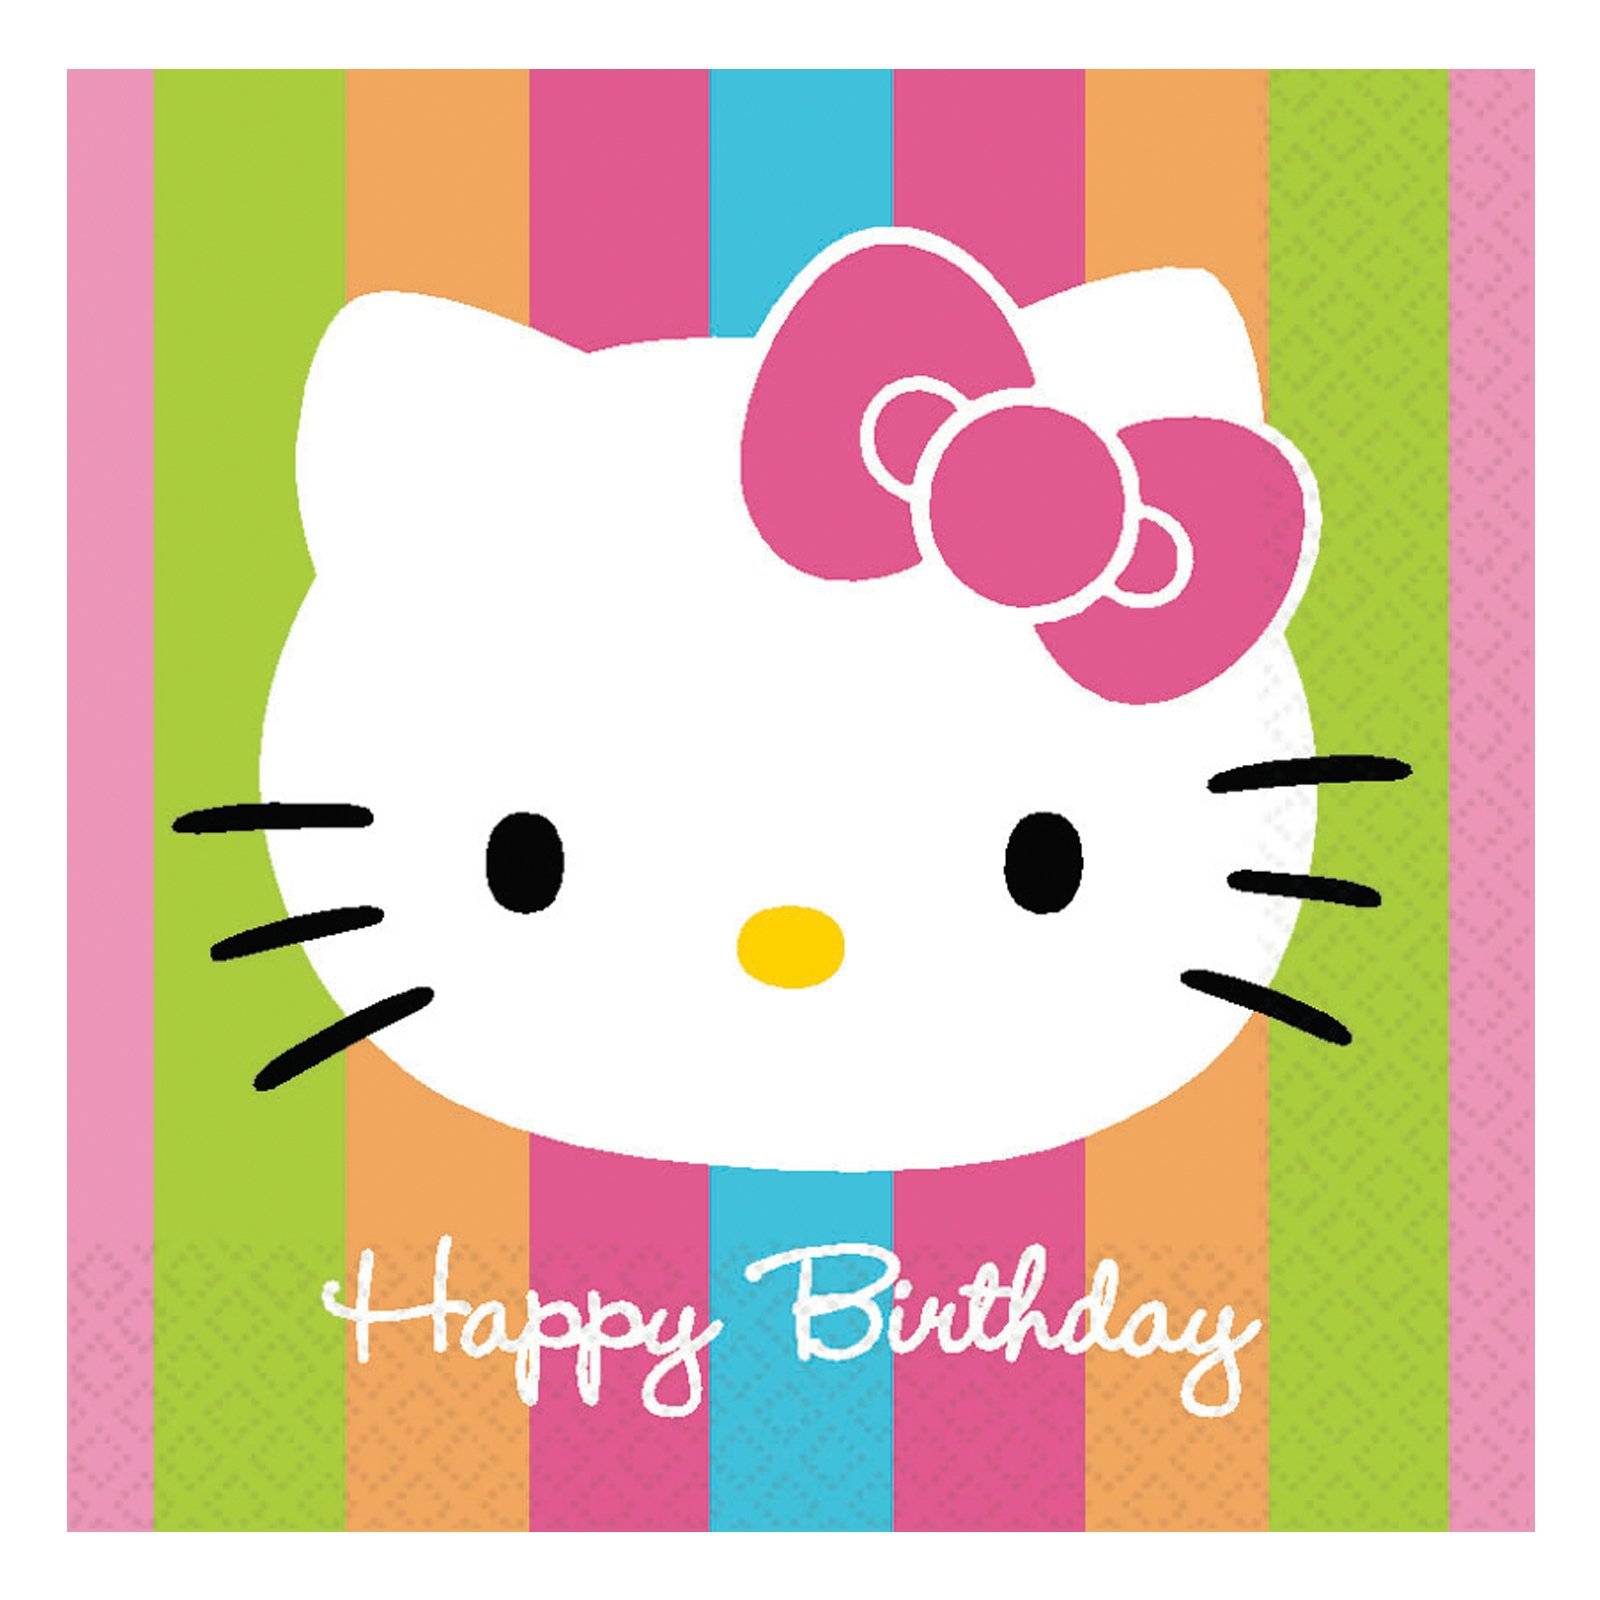 happy birthday hello kitty cards